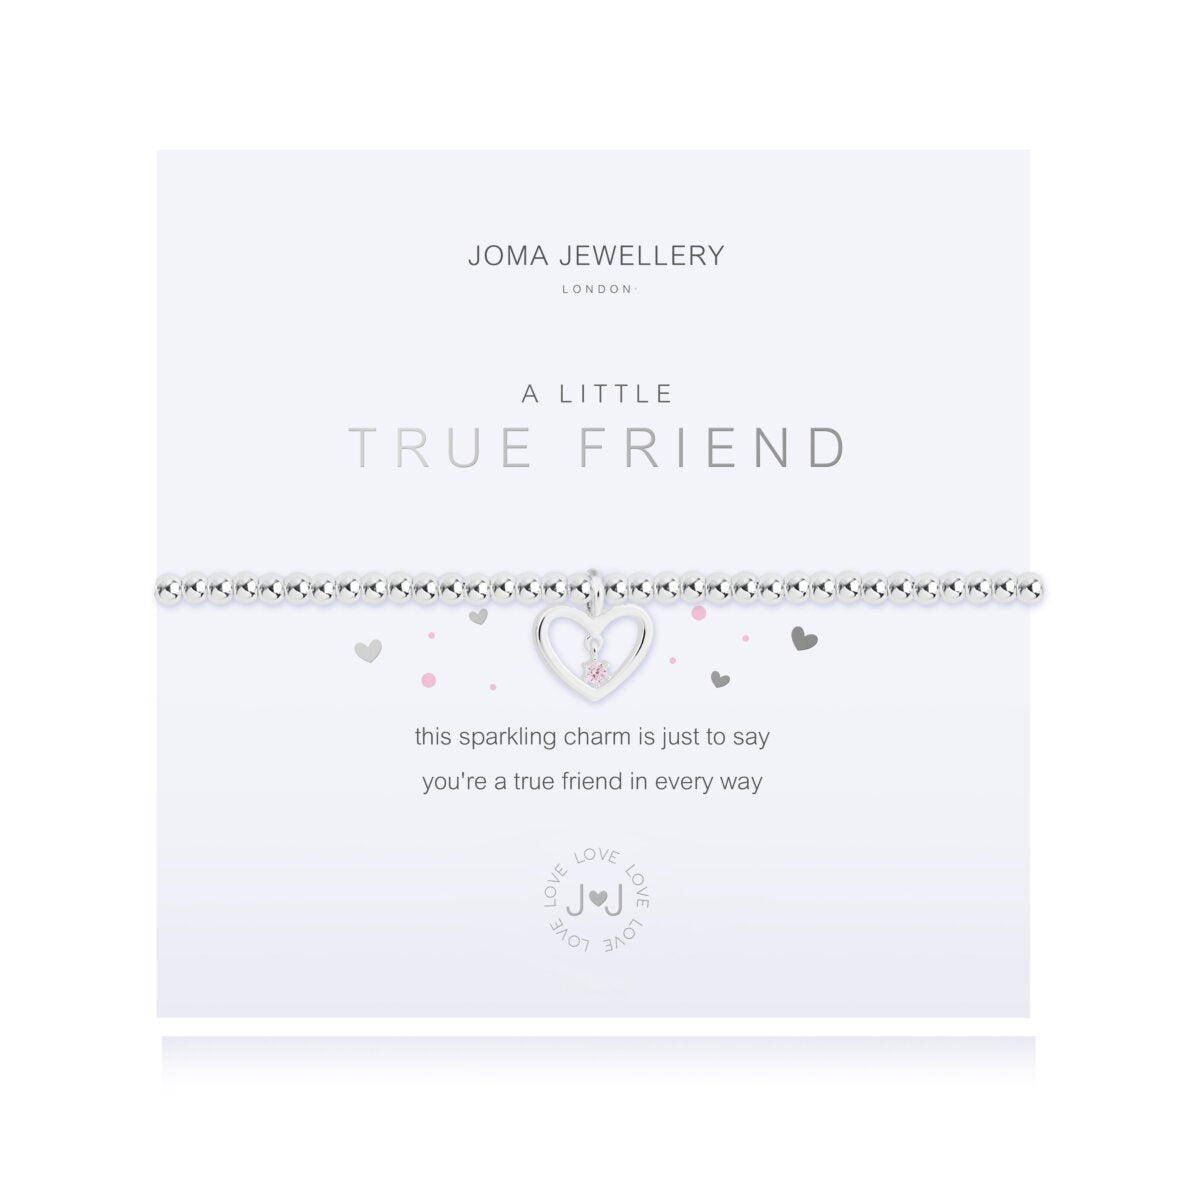 Joma Jewellery 'A Little' True Friend